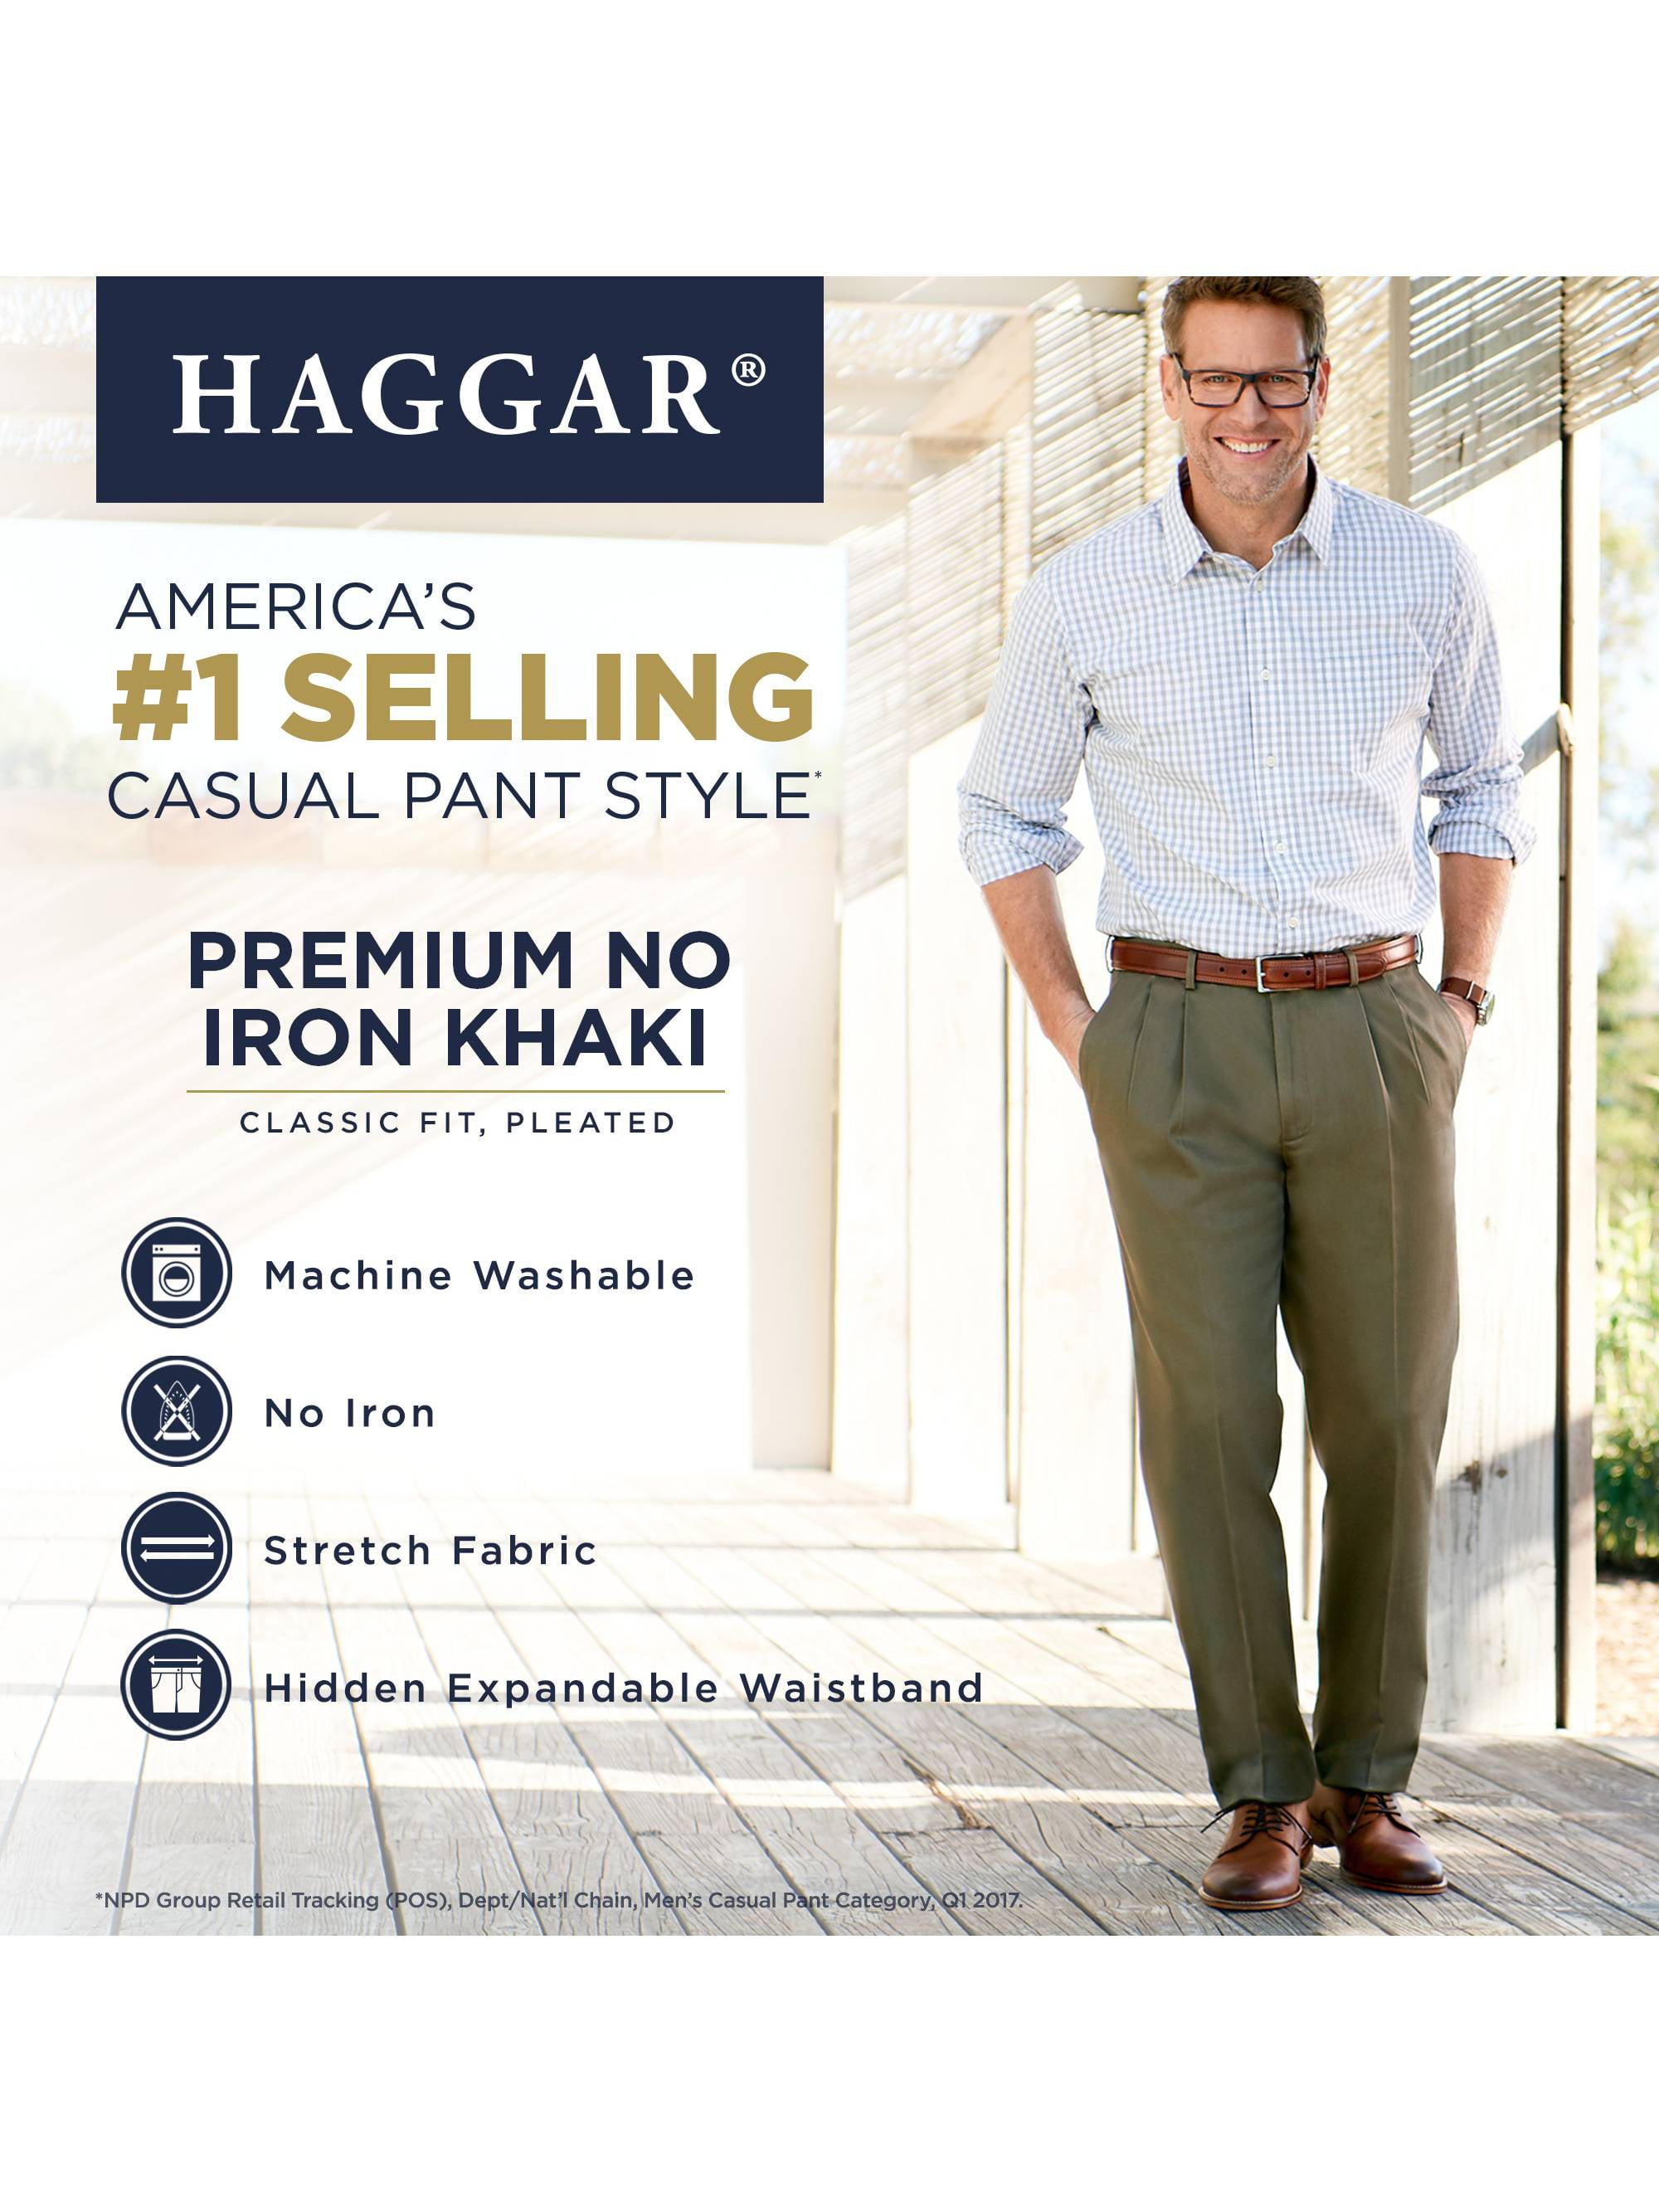 Haggar Men's Premium No Iron Classic Fit flat Front Casual Pants Khaki  50" x 30" | eBay